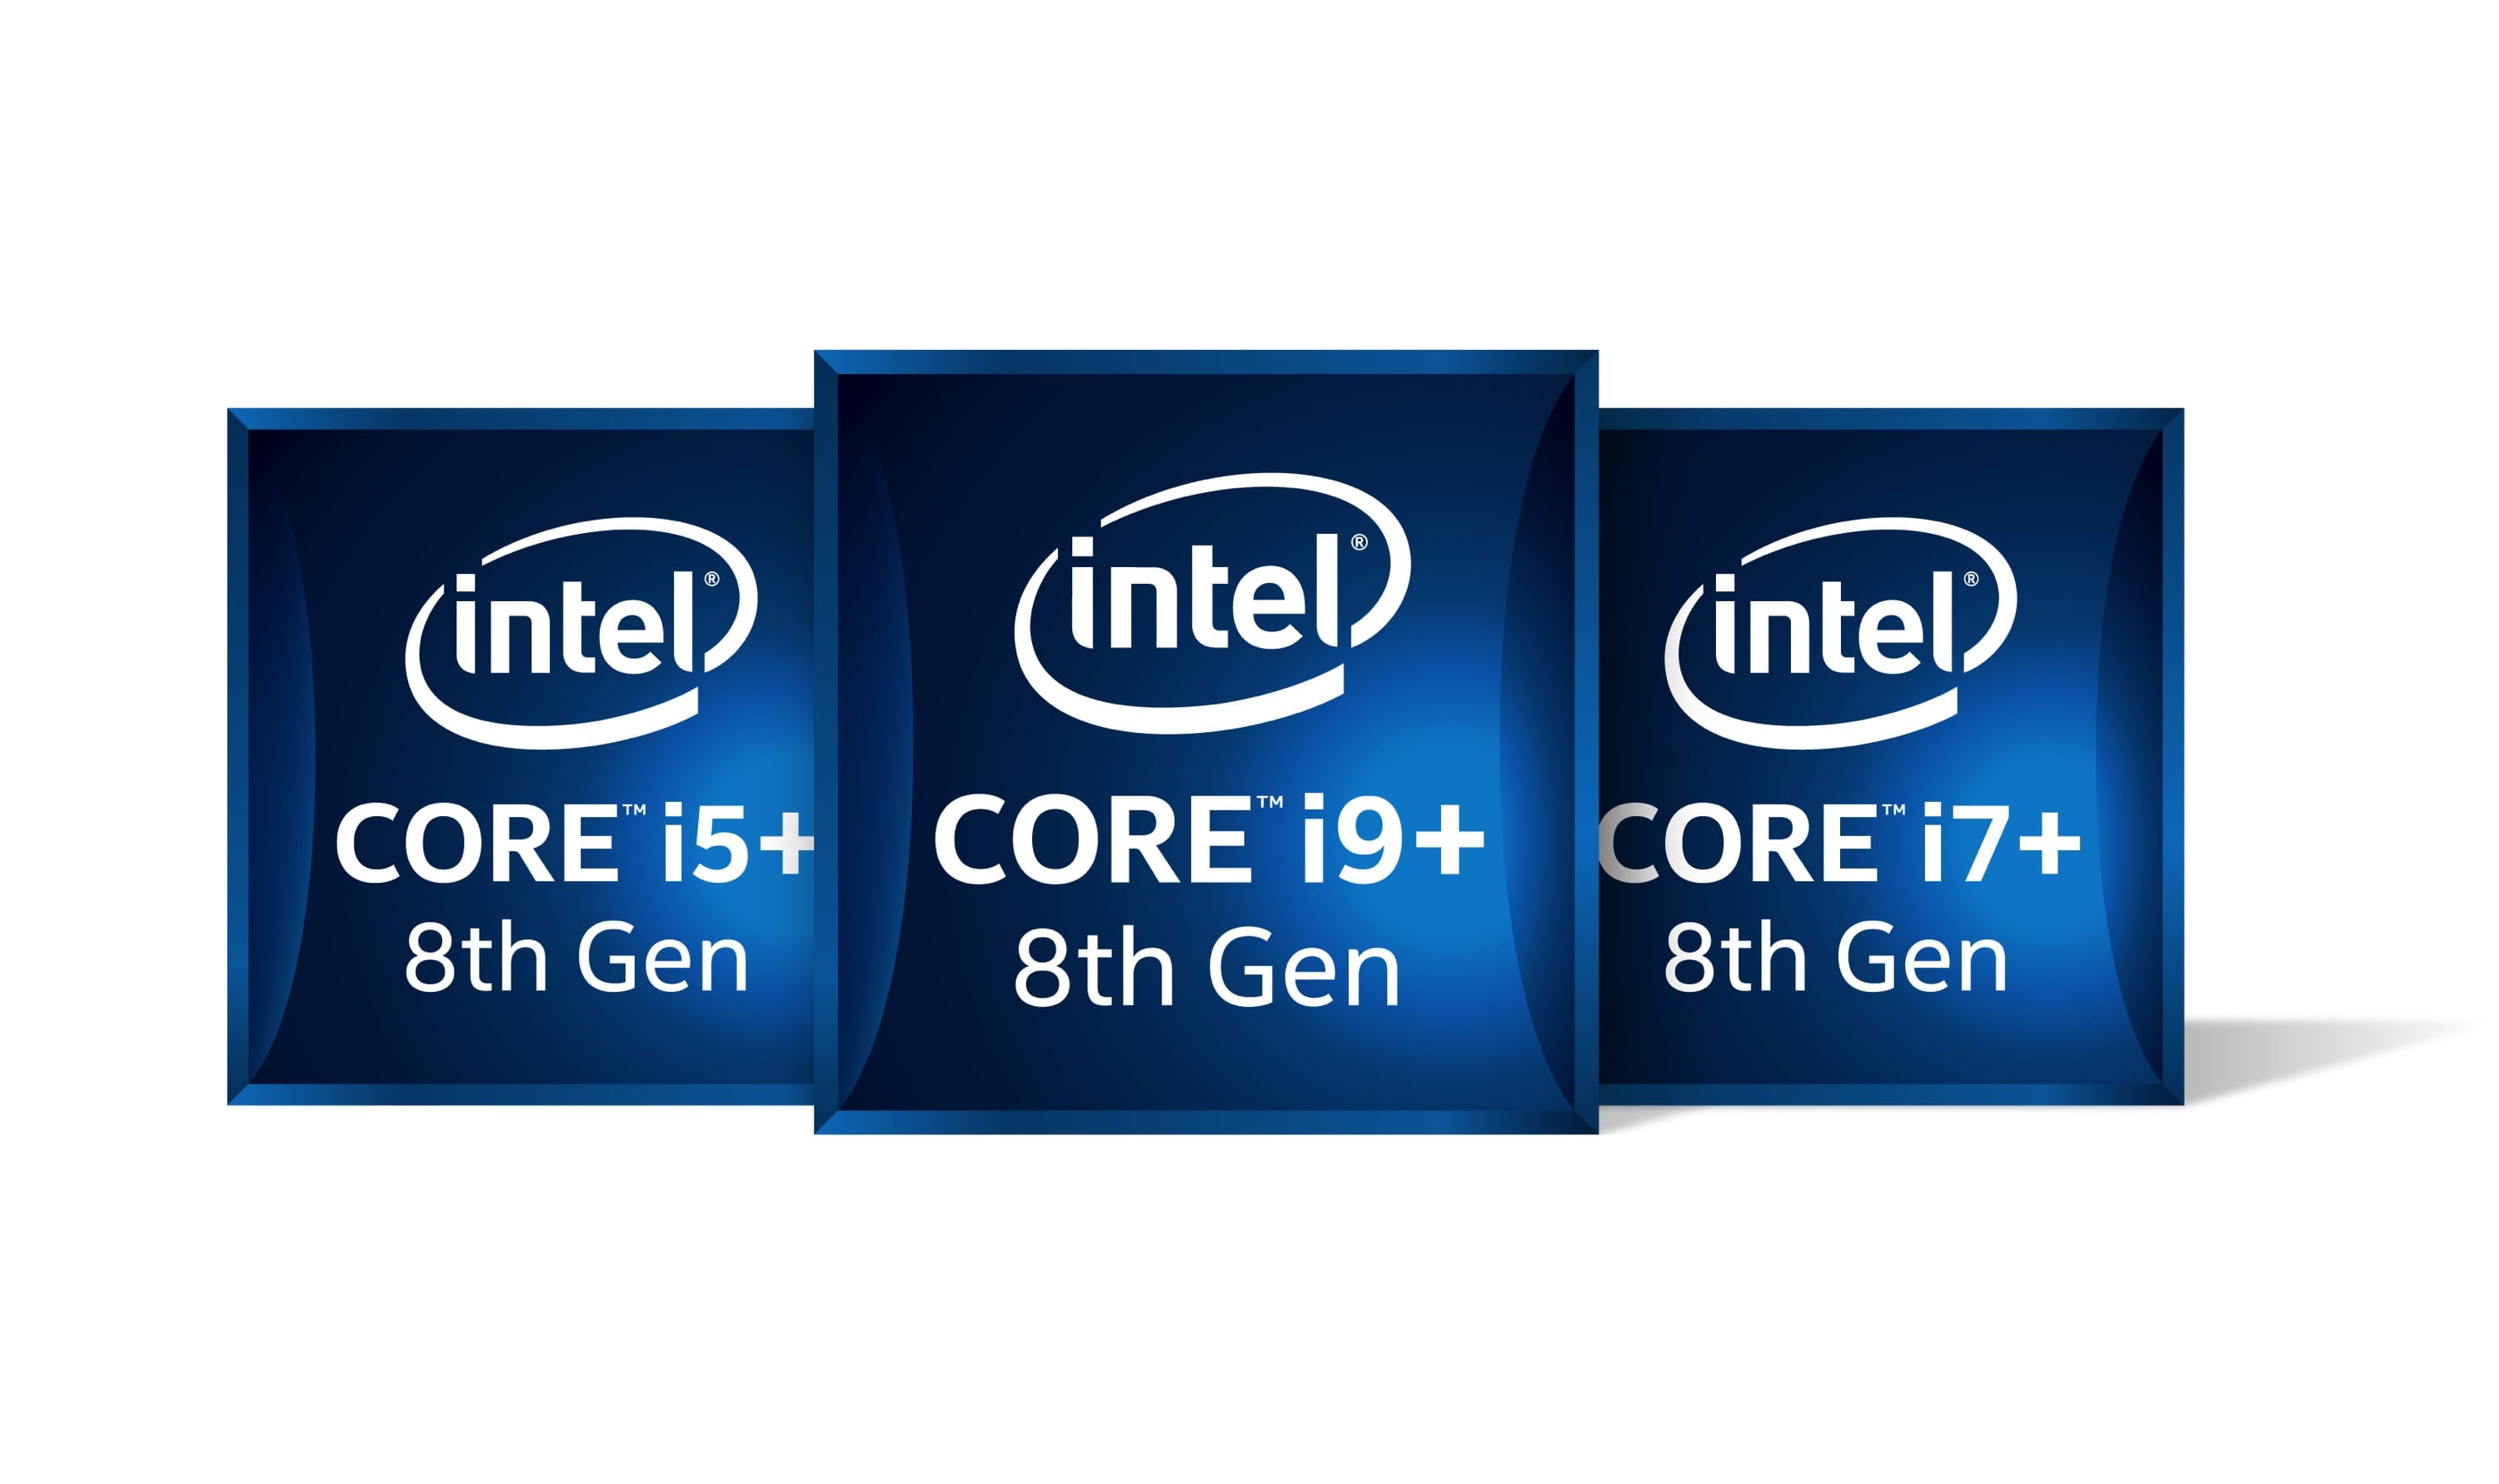 Intel оф сайт. Intel Core i9-9900kf. Intel Core i5-9600k. Процессор Intel Core i5 9. Intel Core i7 vpro.